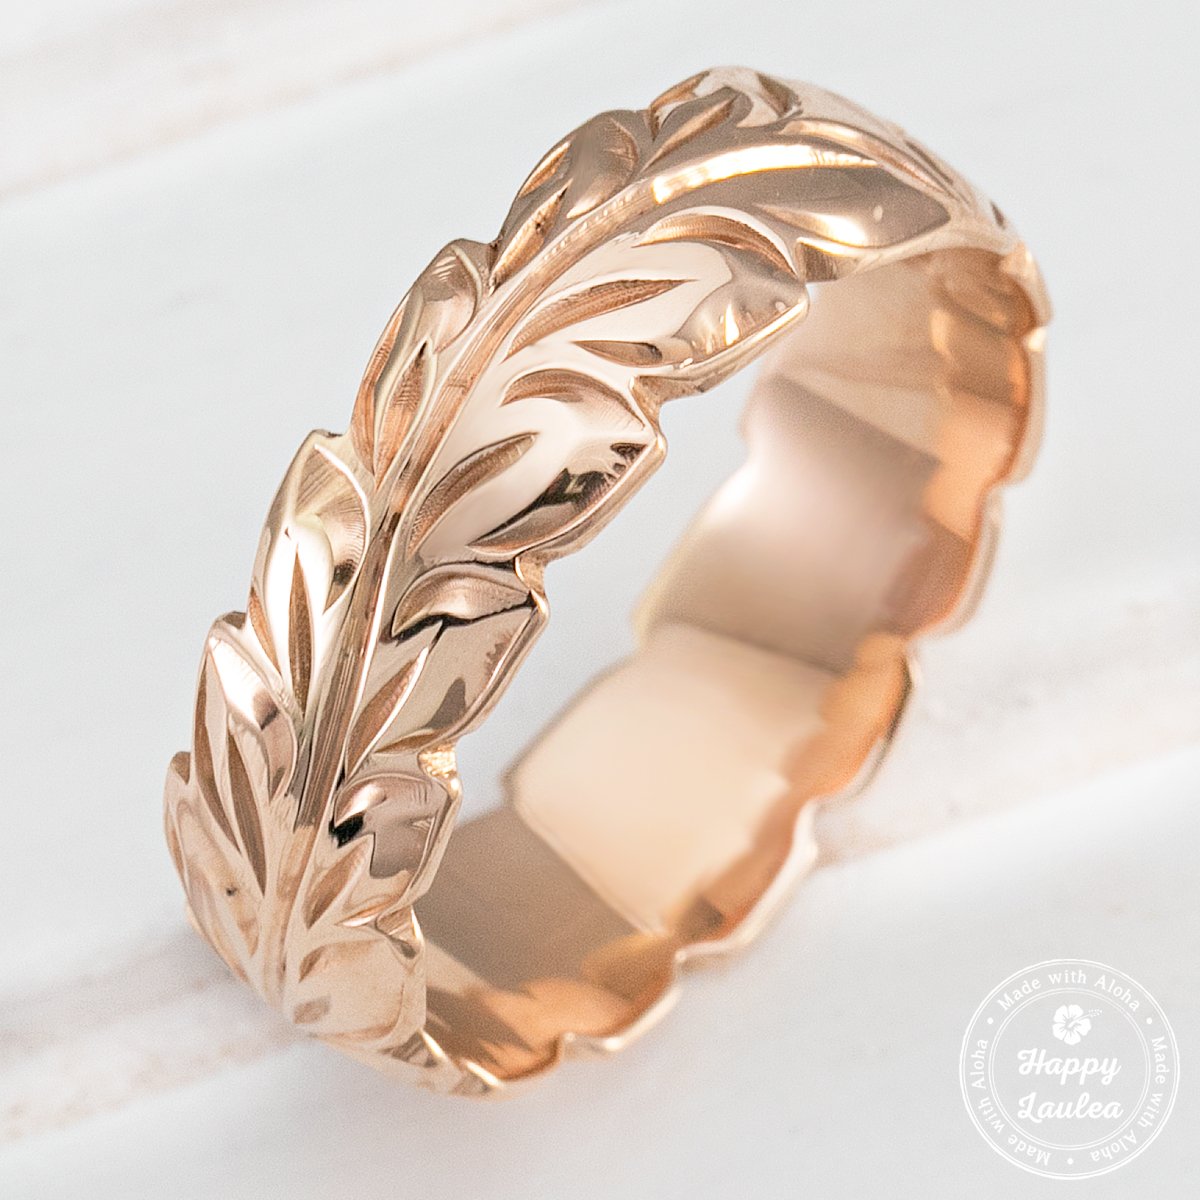 14k Gold Hand Engraved Ring [6mm] Hawaiian Maile Leaf Design - Barrel Shape